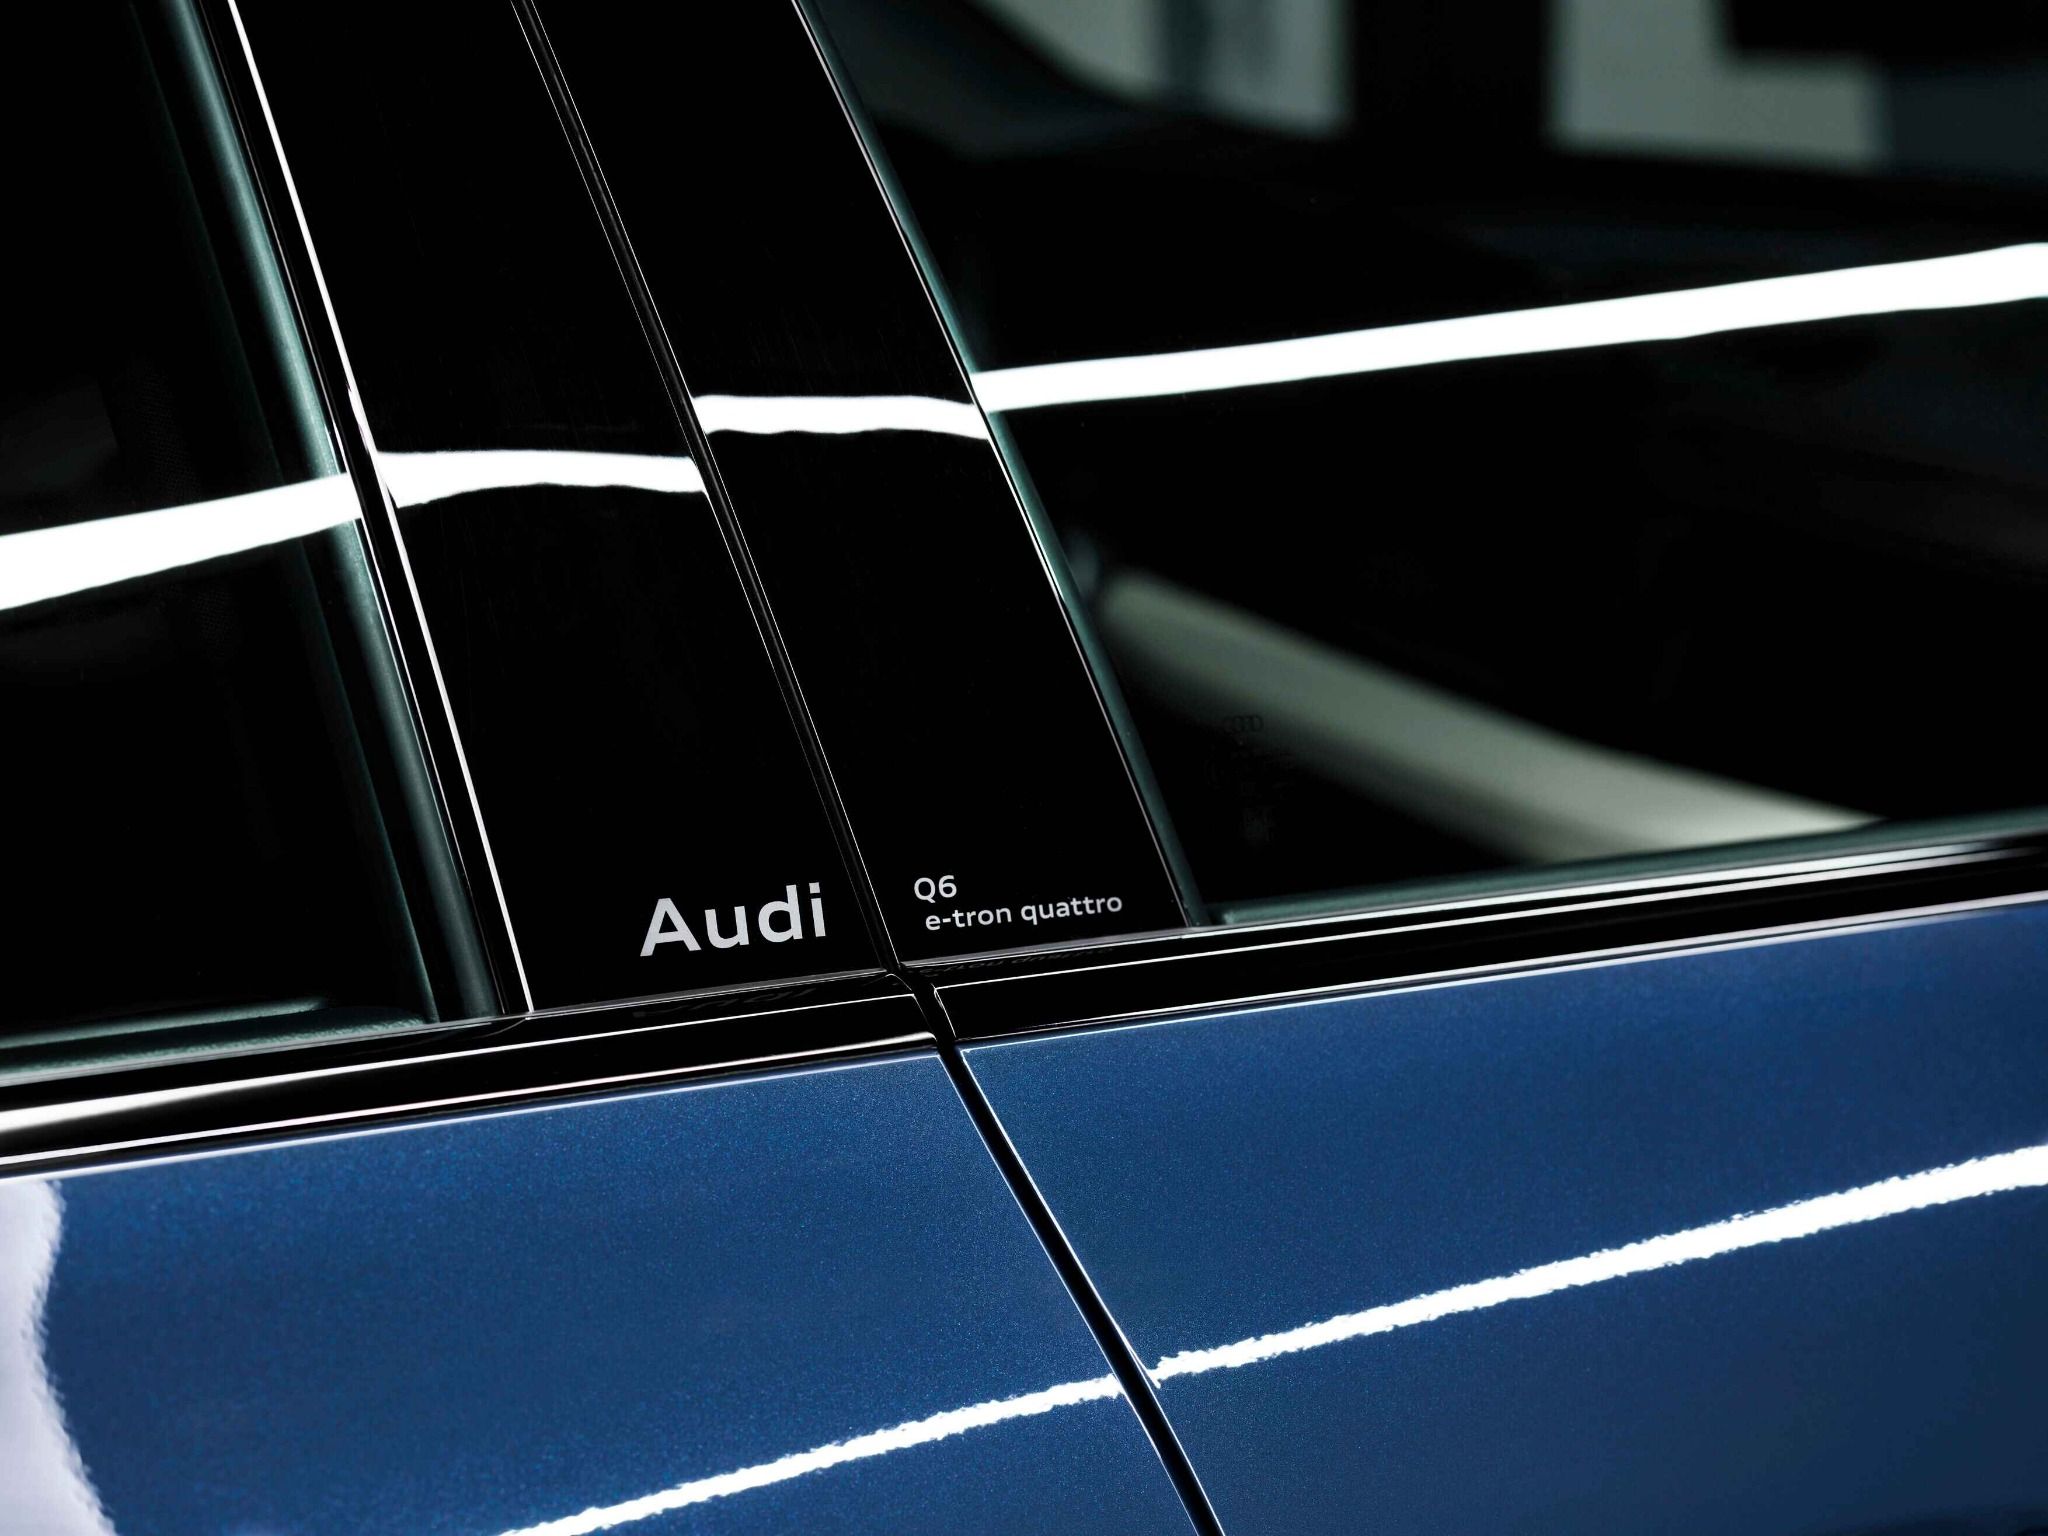 New Audi Q6 e-tron